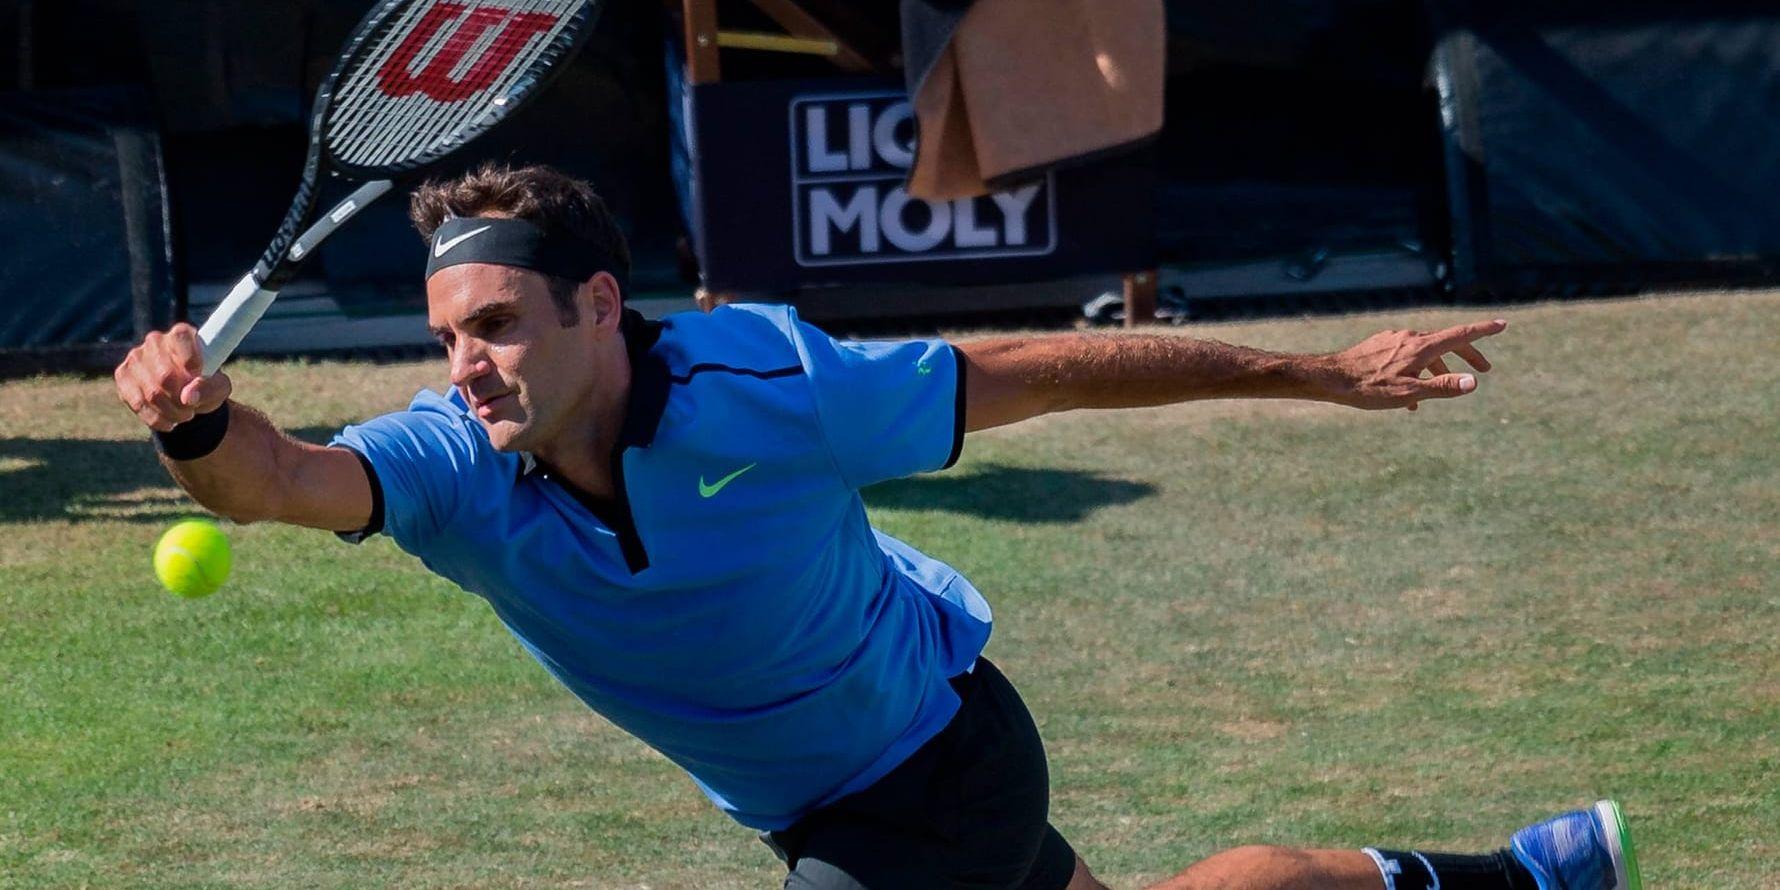 Roger Federer var ringrostig i sin comeback och förlorade mot kompisen Tommy Haas i Stuttgarts grästurnering.